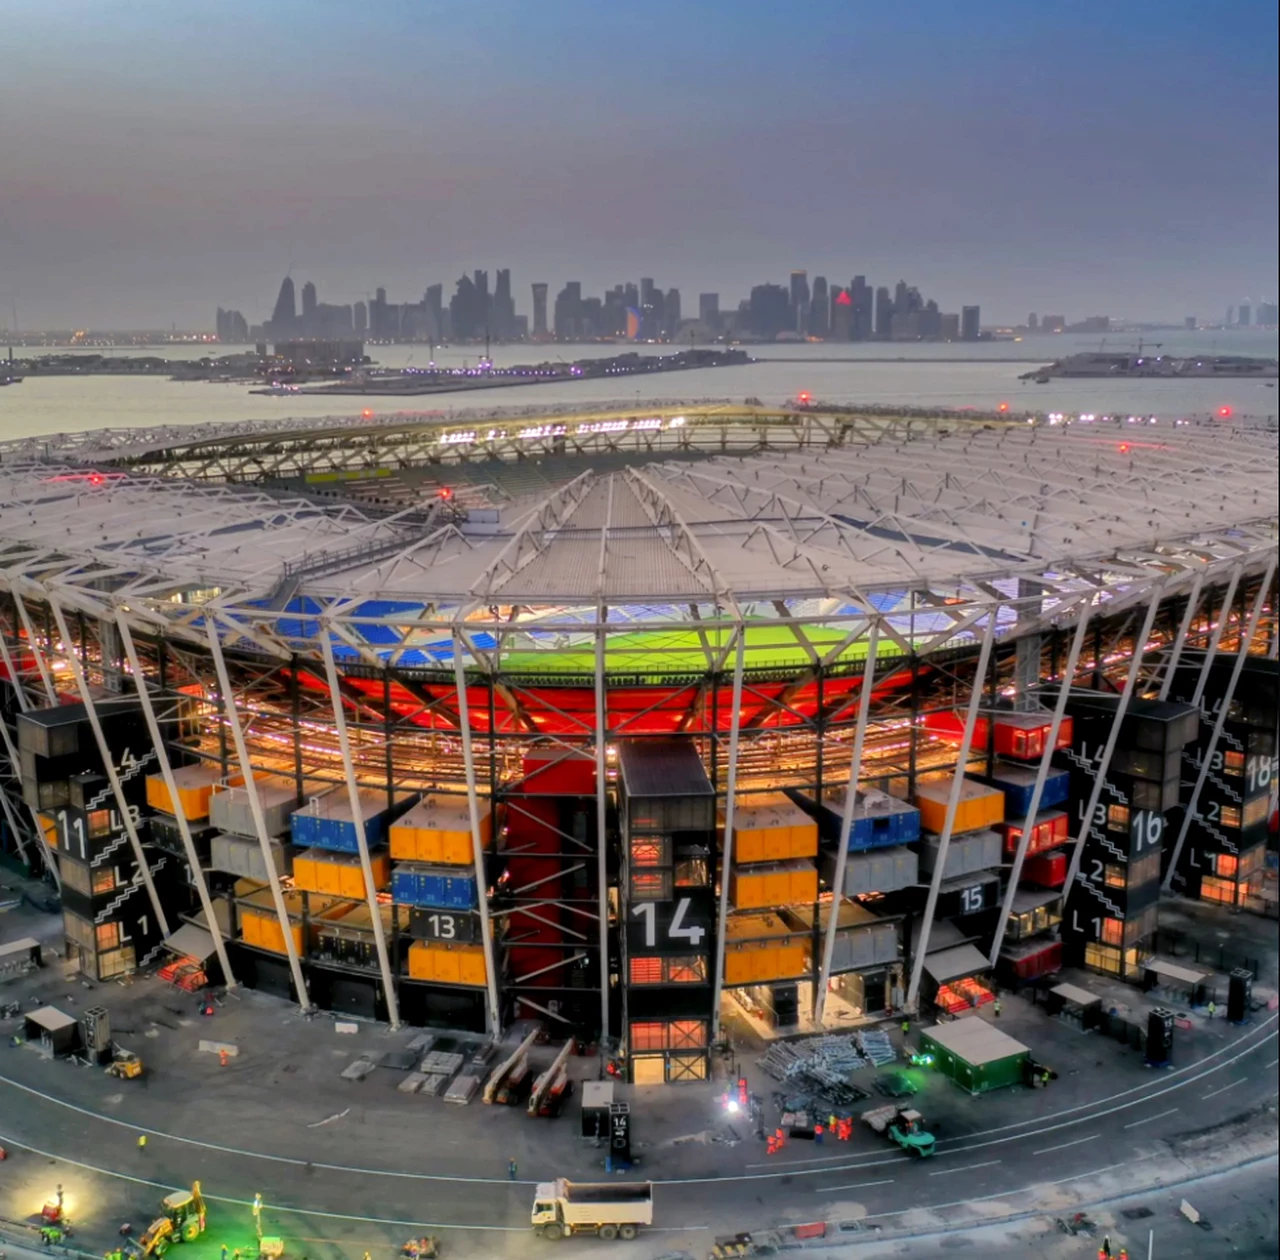 "974 STADIUM", el innovador estadio de Qatar construido con 974 contenedores CIMC: un hito en sustentabilidad que anticipa el futuro de eventos globales